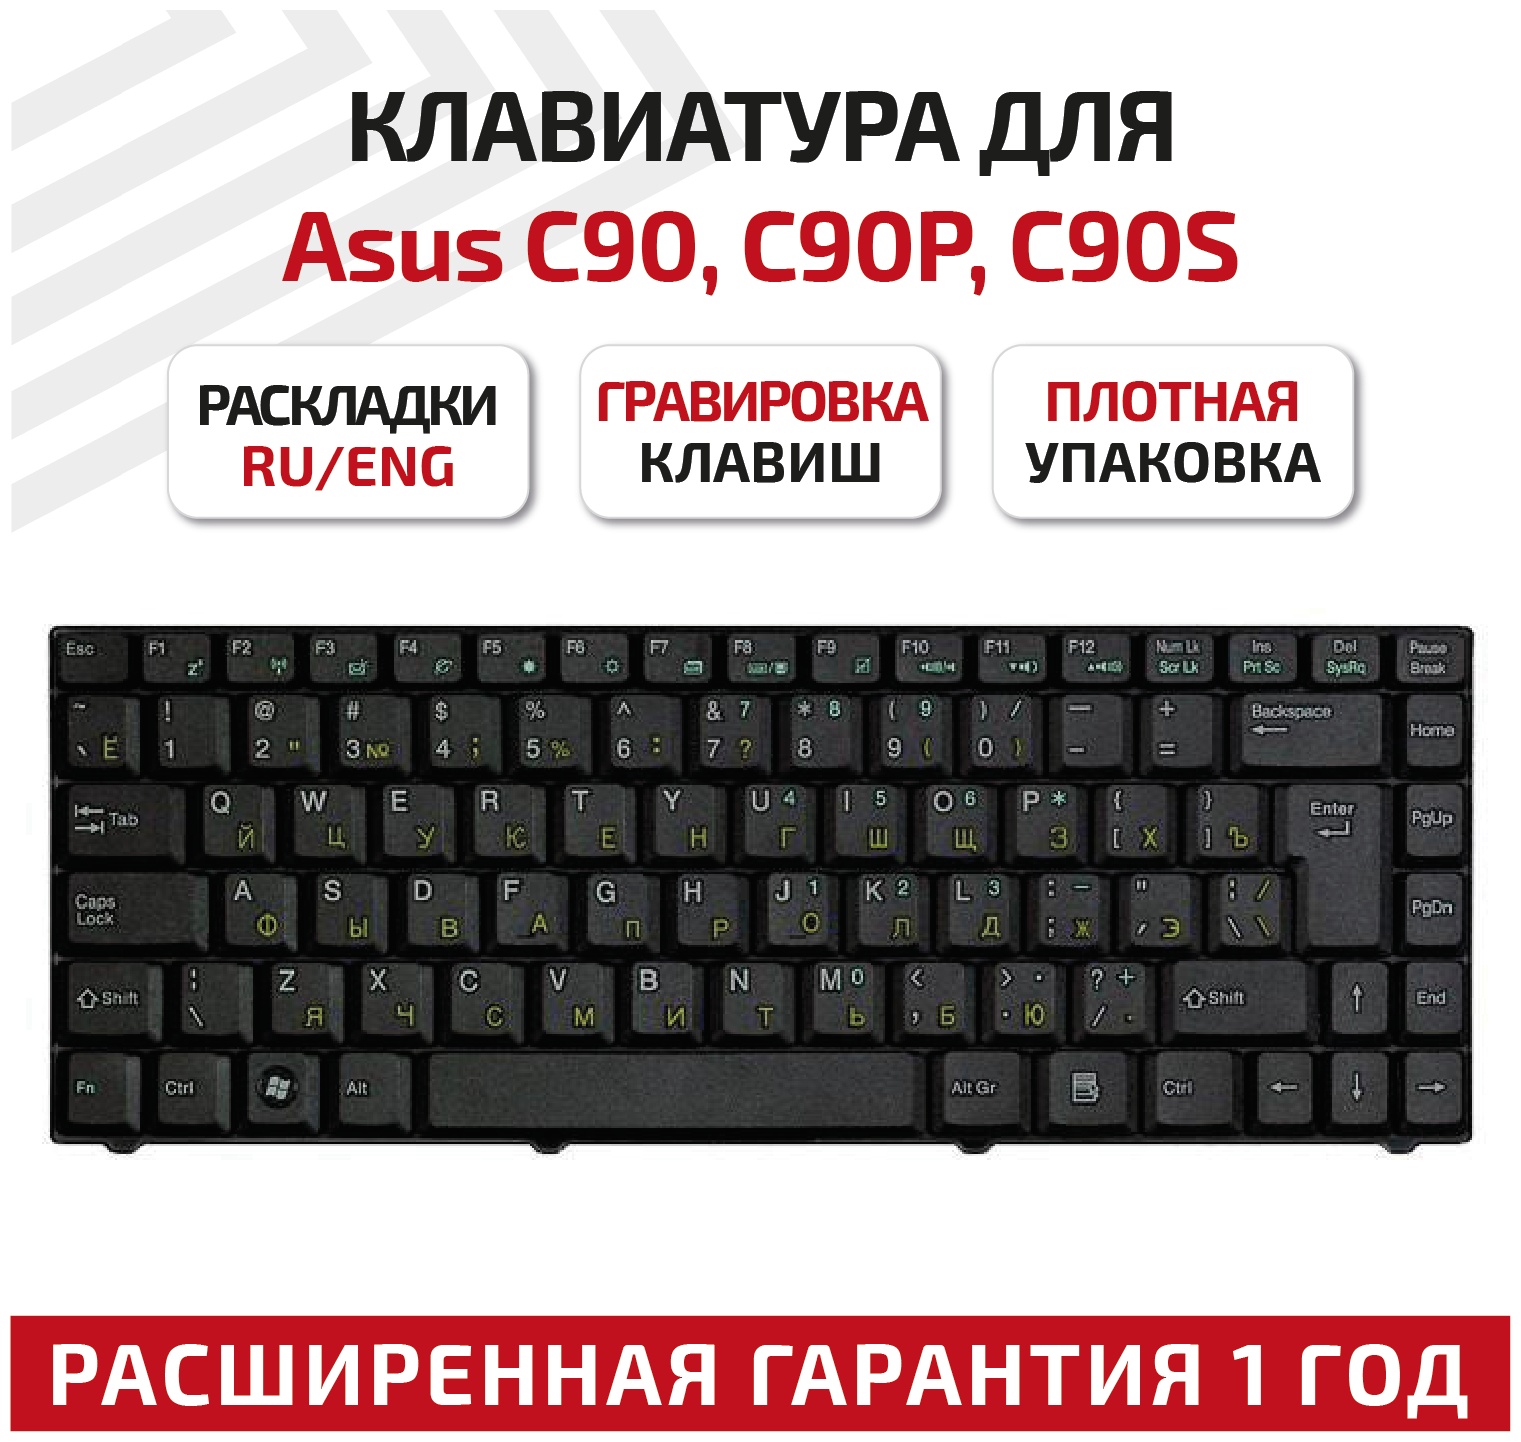 Клавиатура (keyboard) K020462H1 для ноутбука Asus C90, C90P, C90S, Z37, Z37A, Z37E, Z37Ep, Z37S, Z37Sp, Z37V, Z97, Z97V, Z98, черная